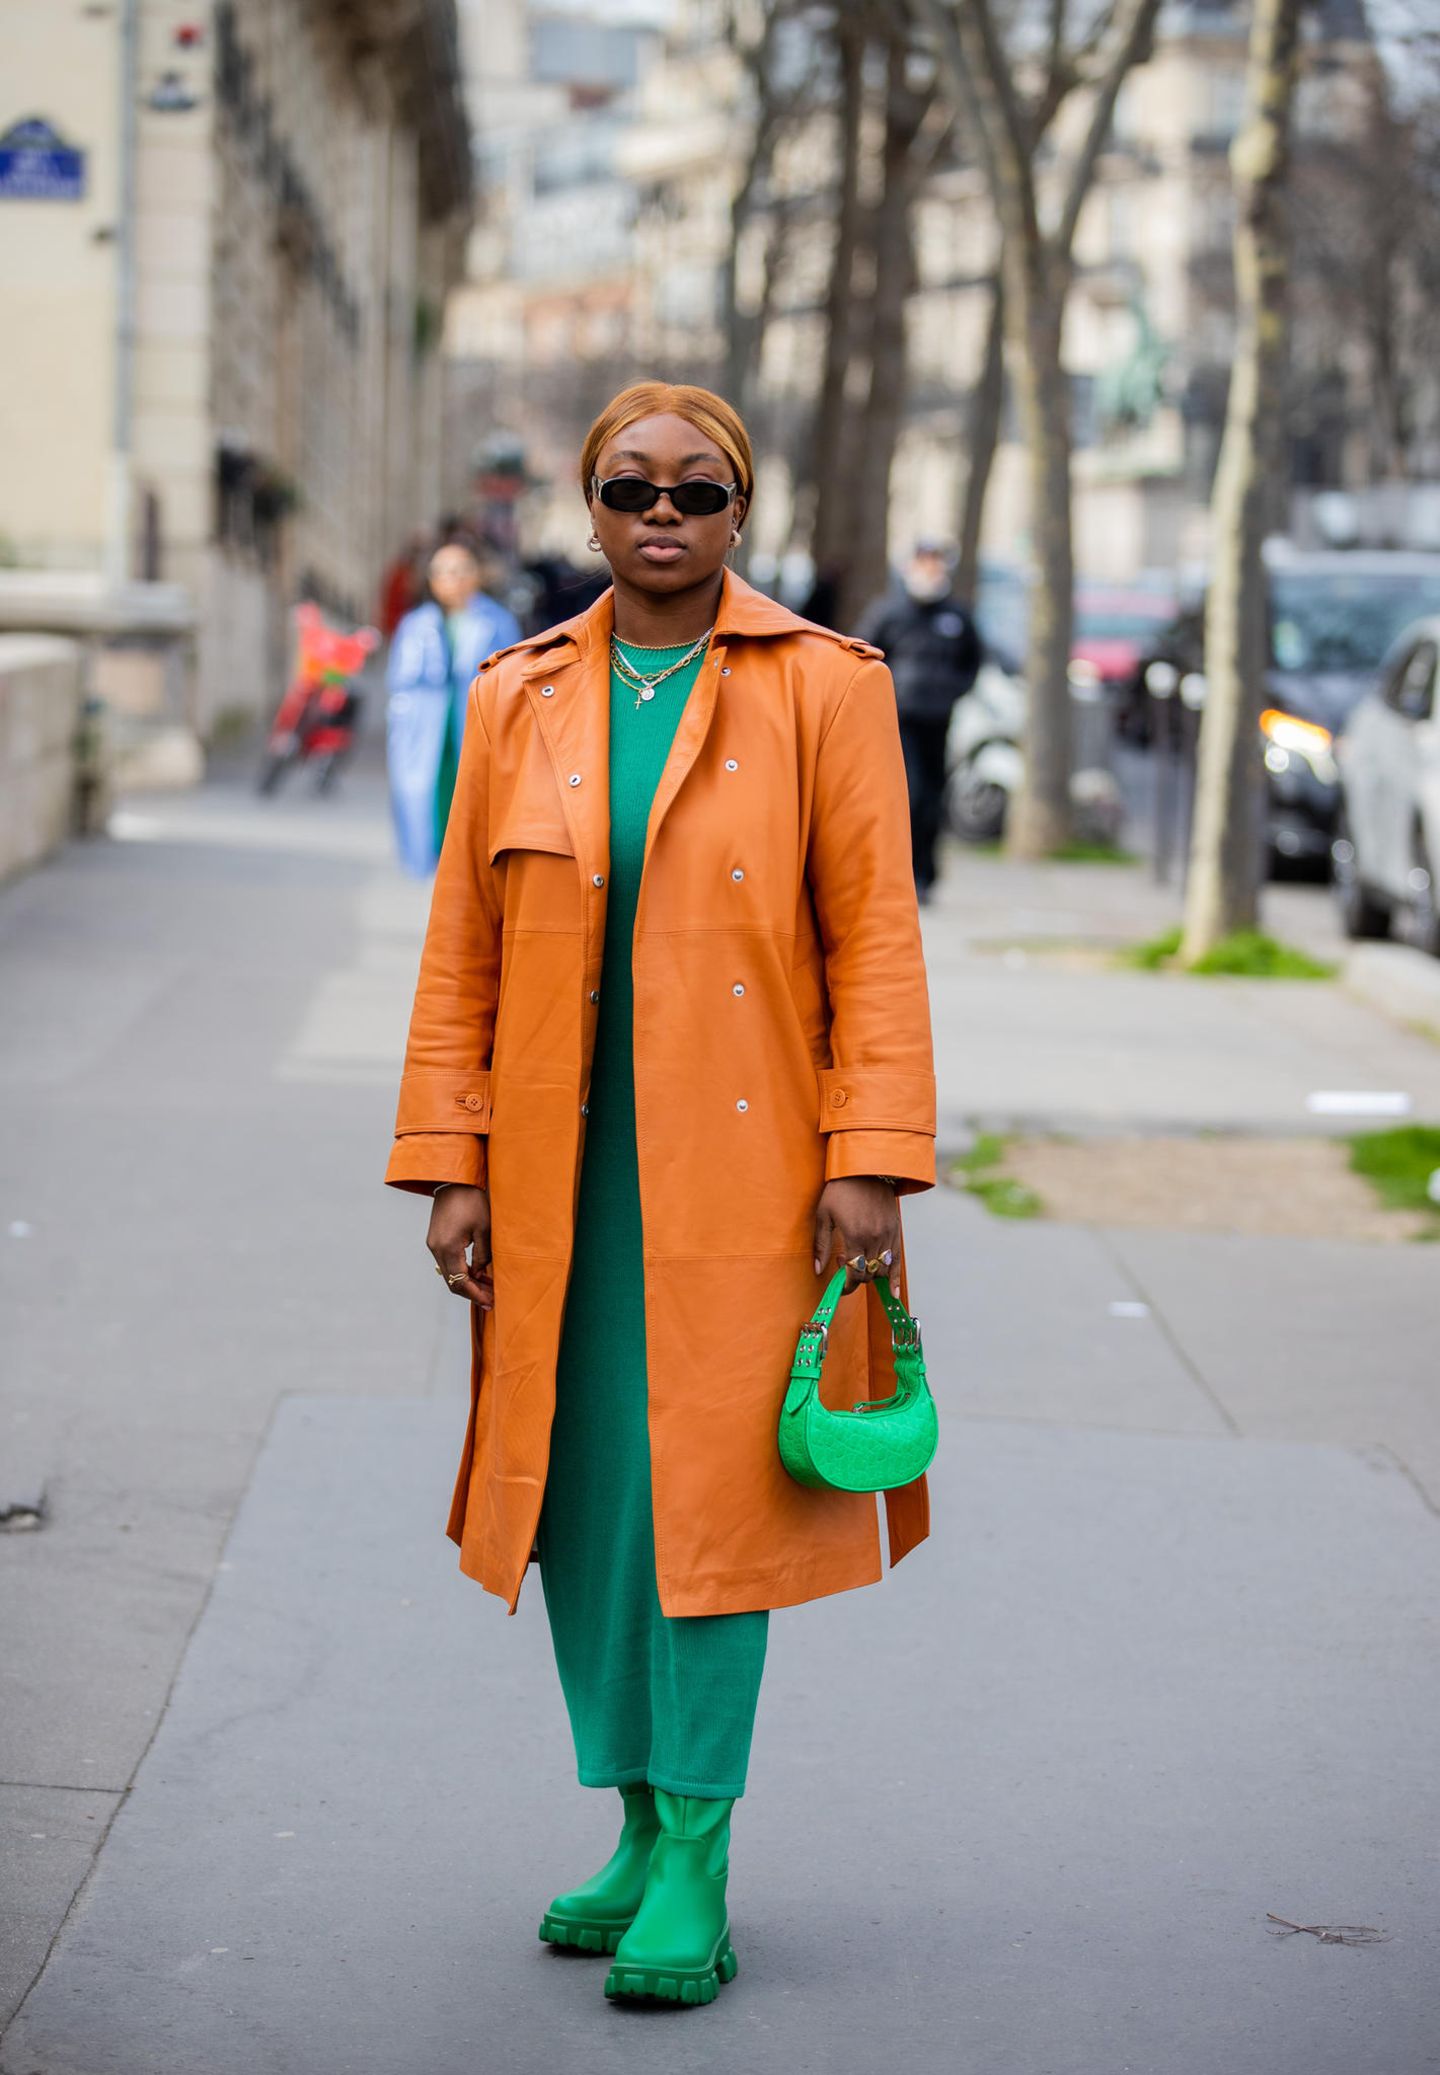 Fällt der Blick nach Paris, sind stylische und extravagante Looks nicht weit. Auch bei Farbkombinationen wird experimentiert und siehe da, Grün und Orange sind ein Perfect Match. Der orangene Ledermantel passt hervorragend zu dem grünen Komplett-Look der Fashion Week Besucherin. 